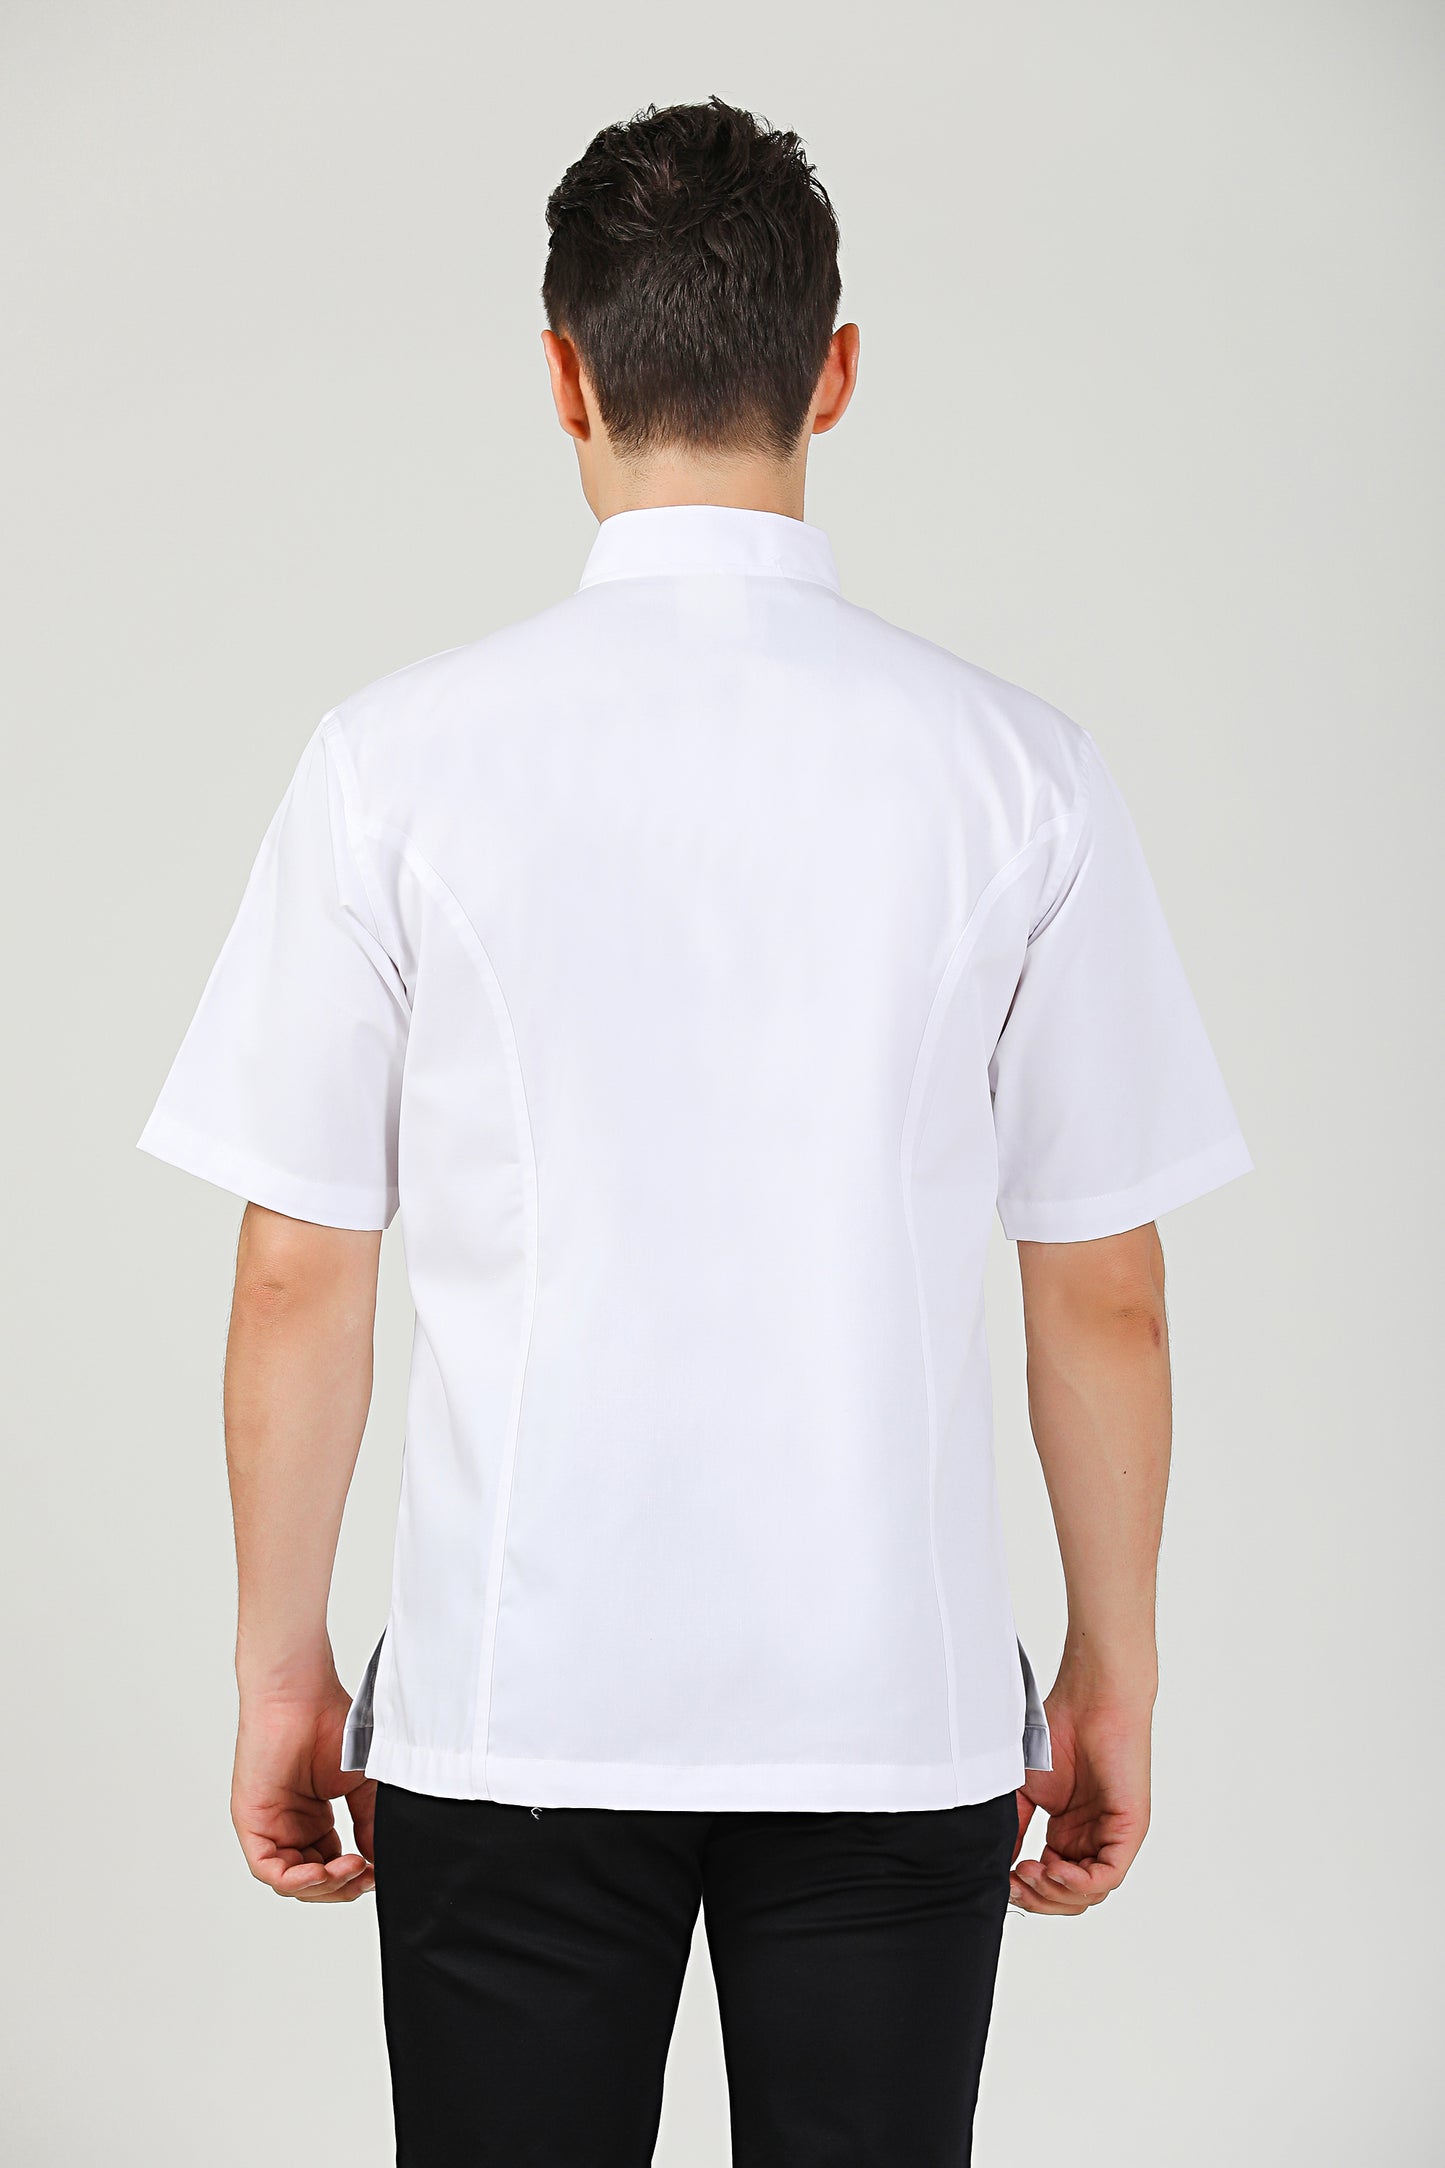 Classic White Chef Jacket, Short Sleeve